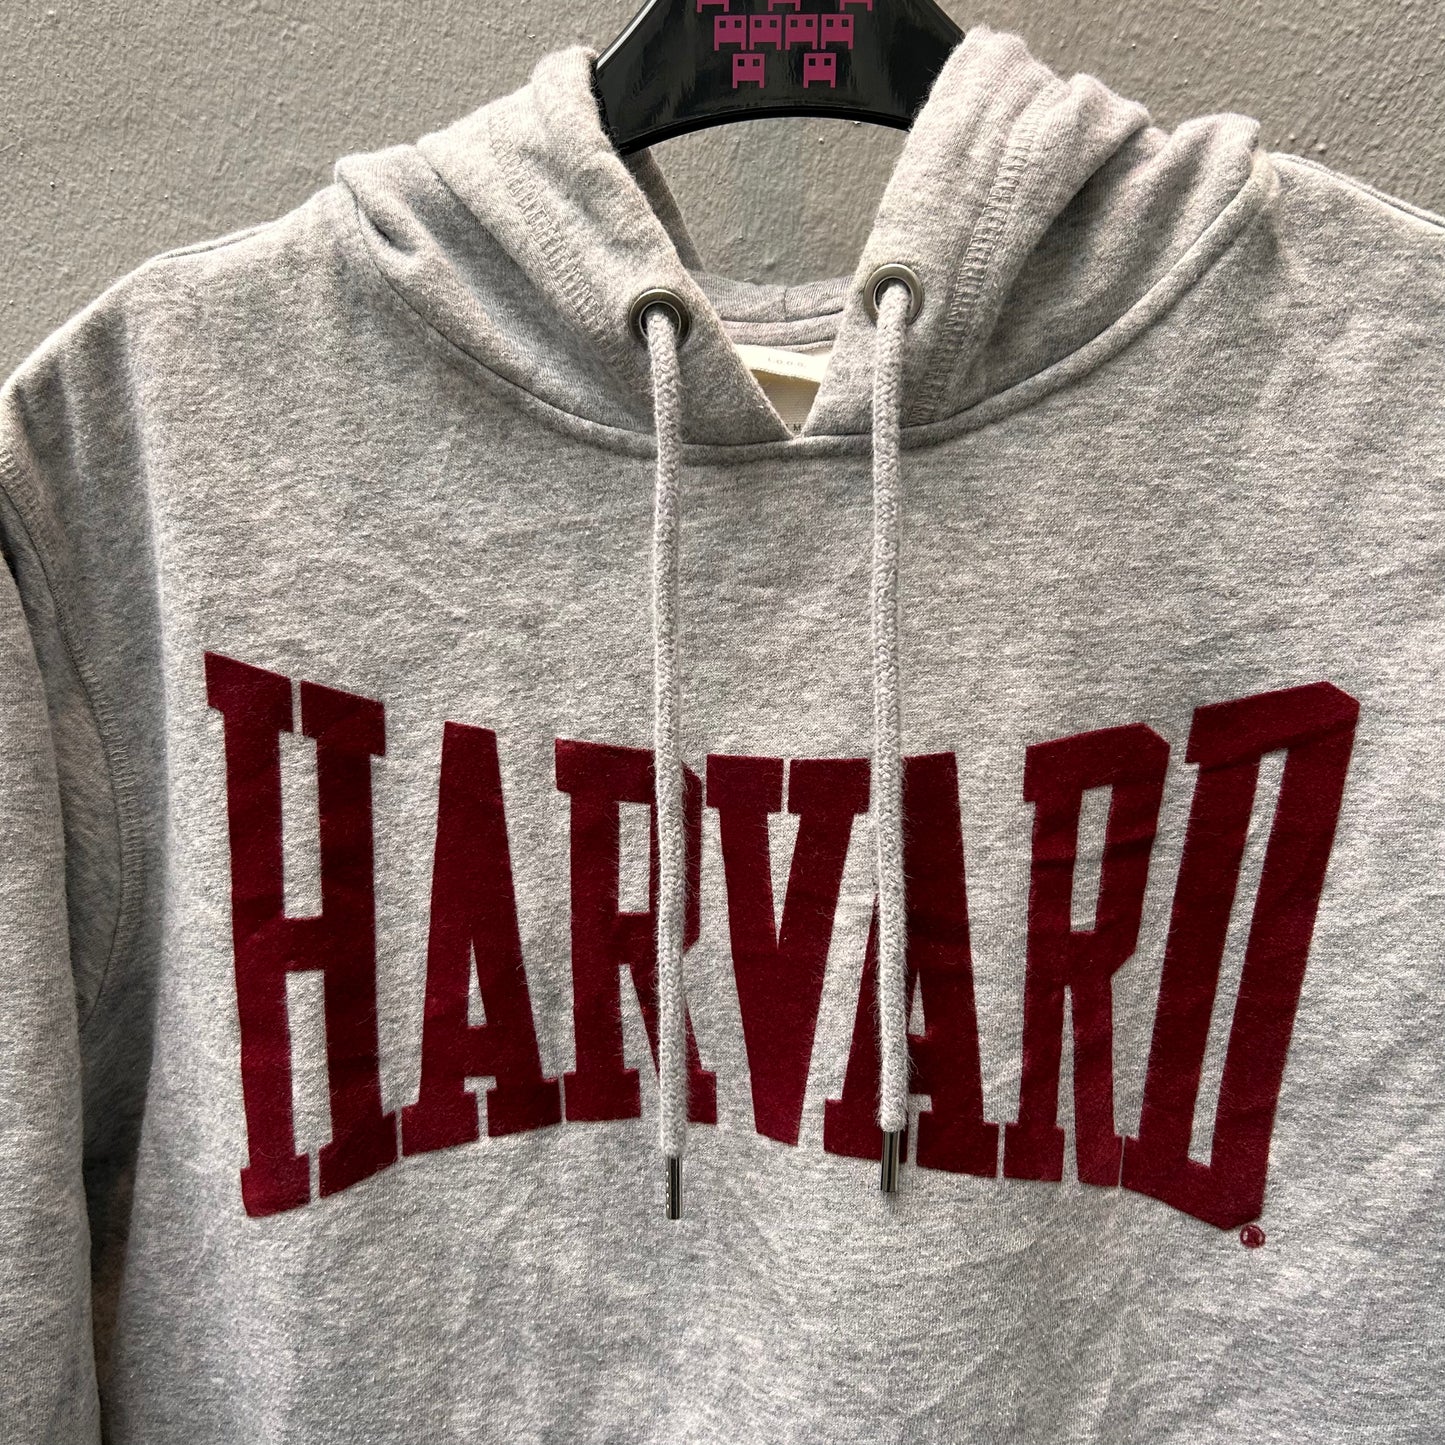 Grey Harvard Hoodie